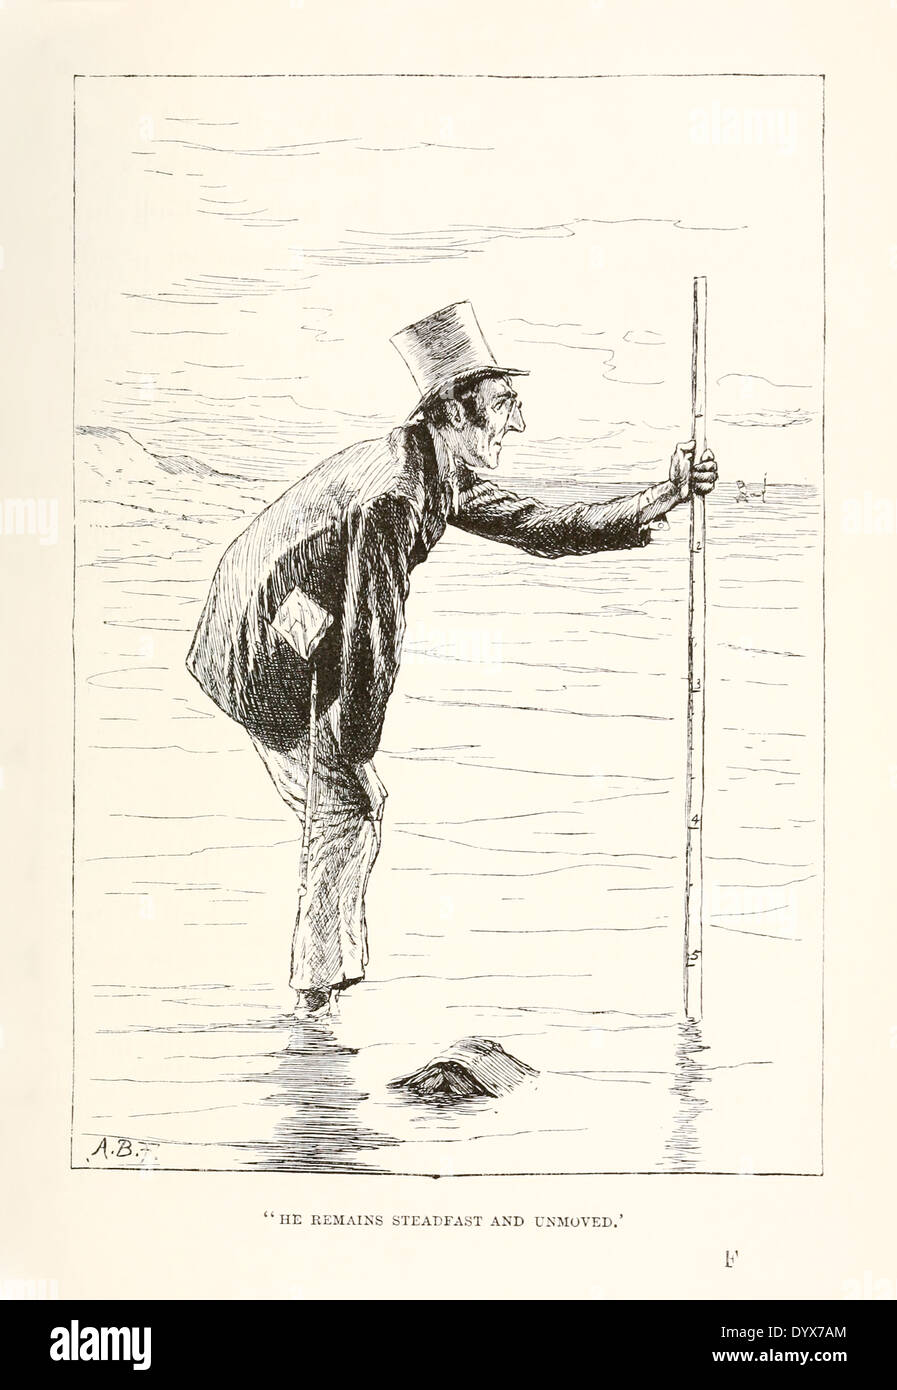 Arthur Burdett Frost (1851-1928) Illustration aus "A Tangled Tale" von Lewis Carroll veröffentlichte 1885. Knoten 9 Schlange mit Ecken Stockfoto